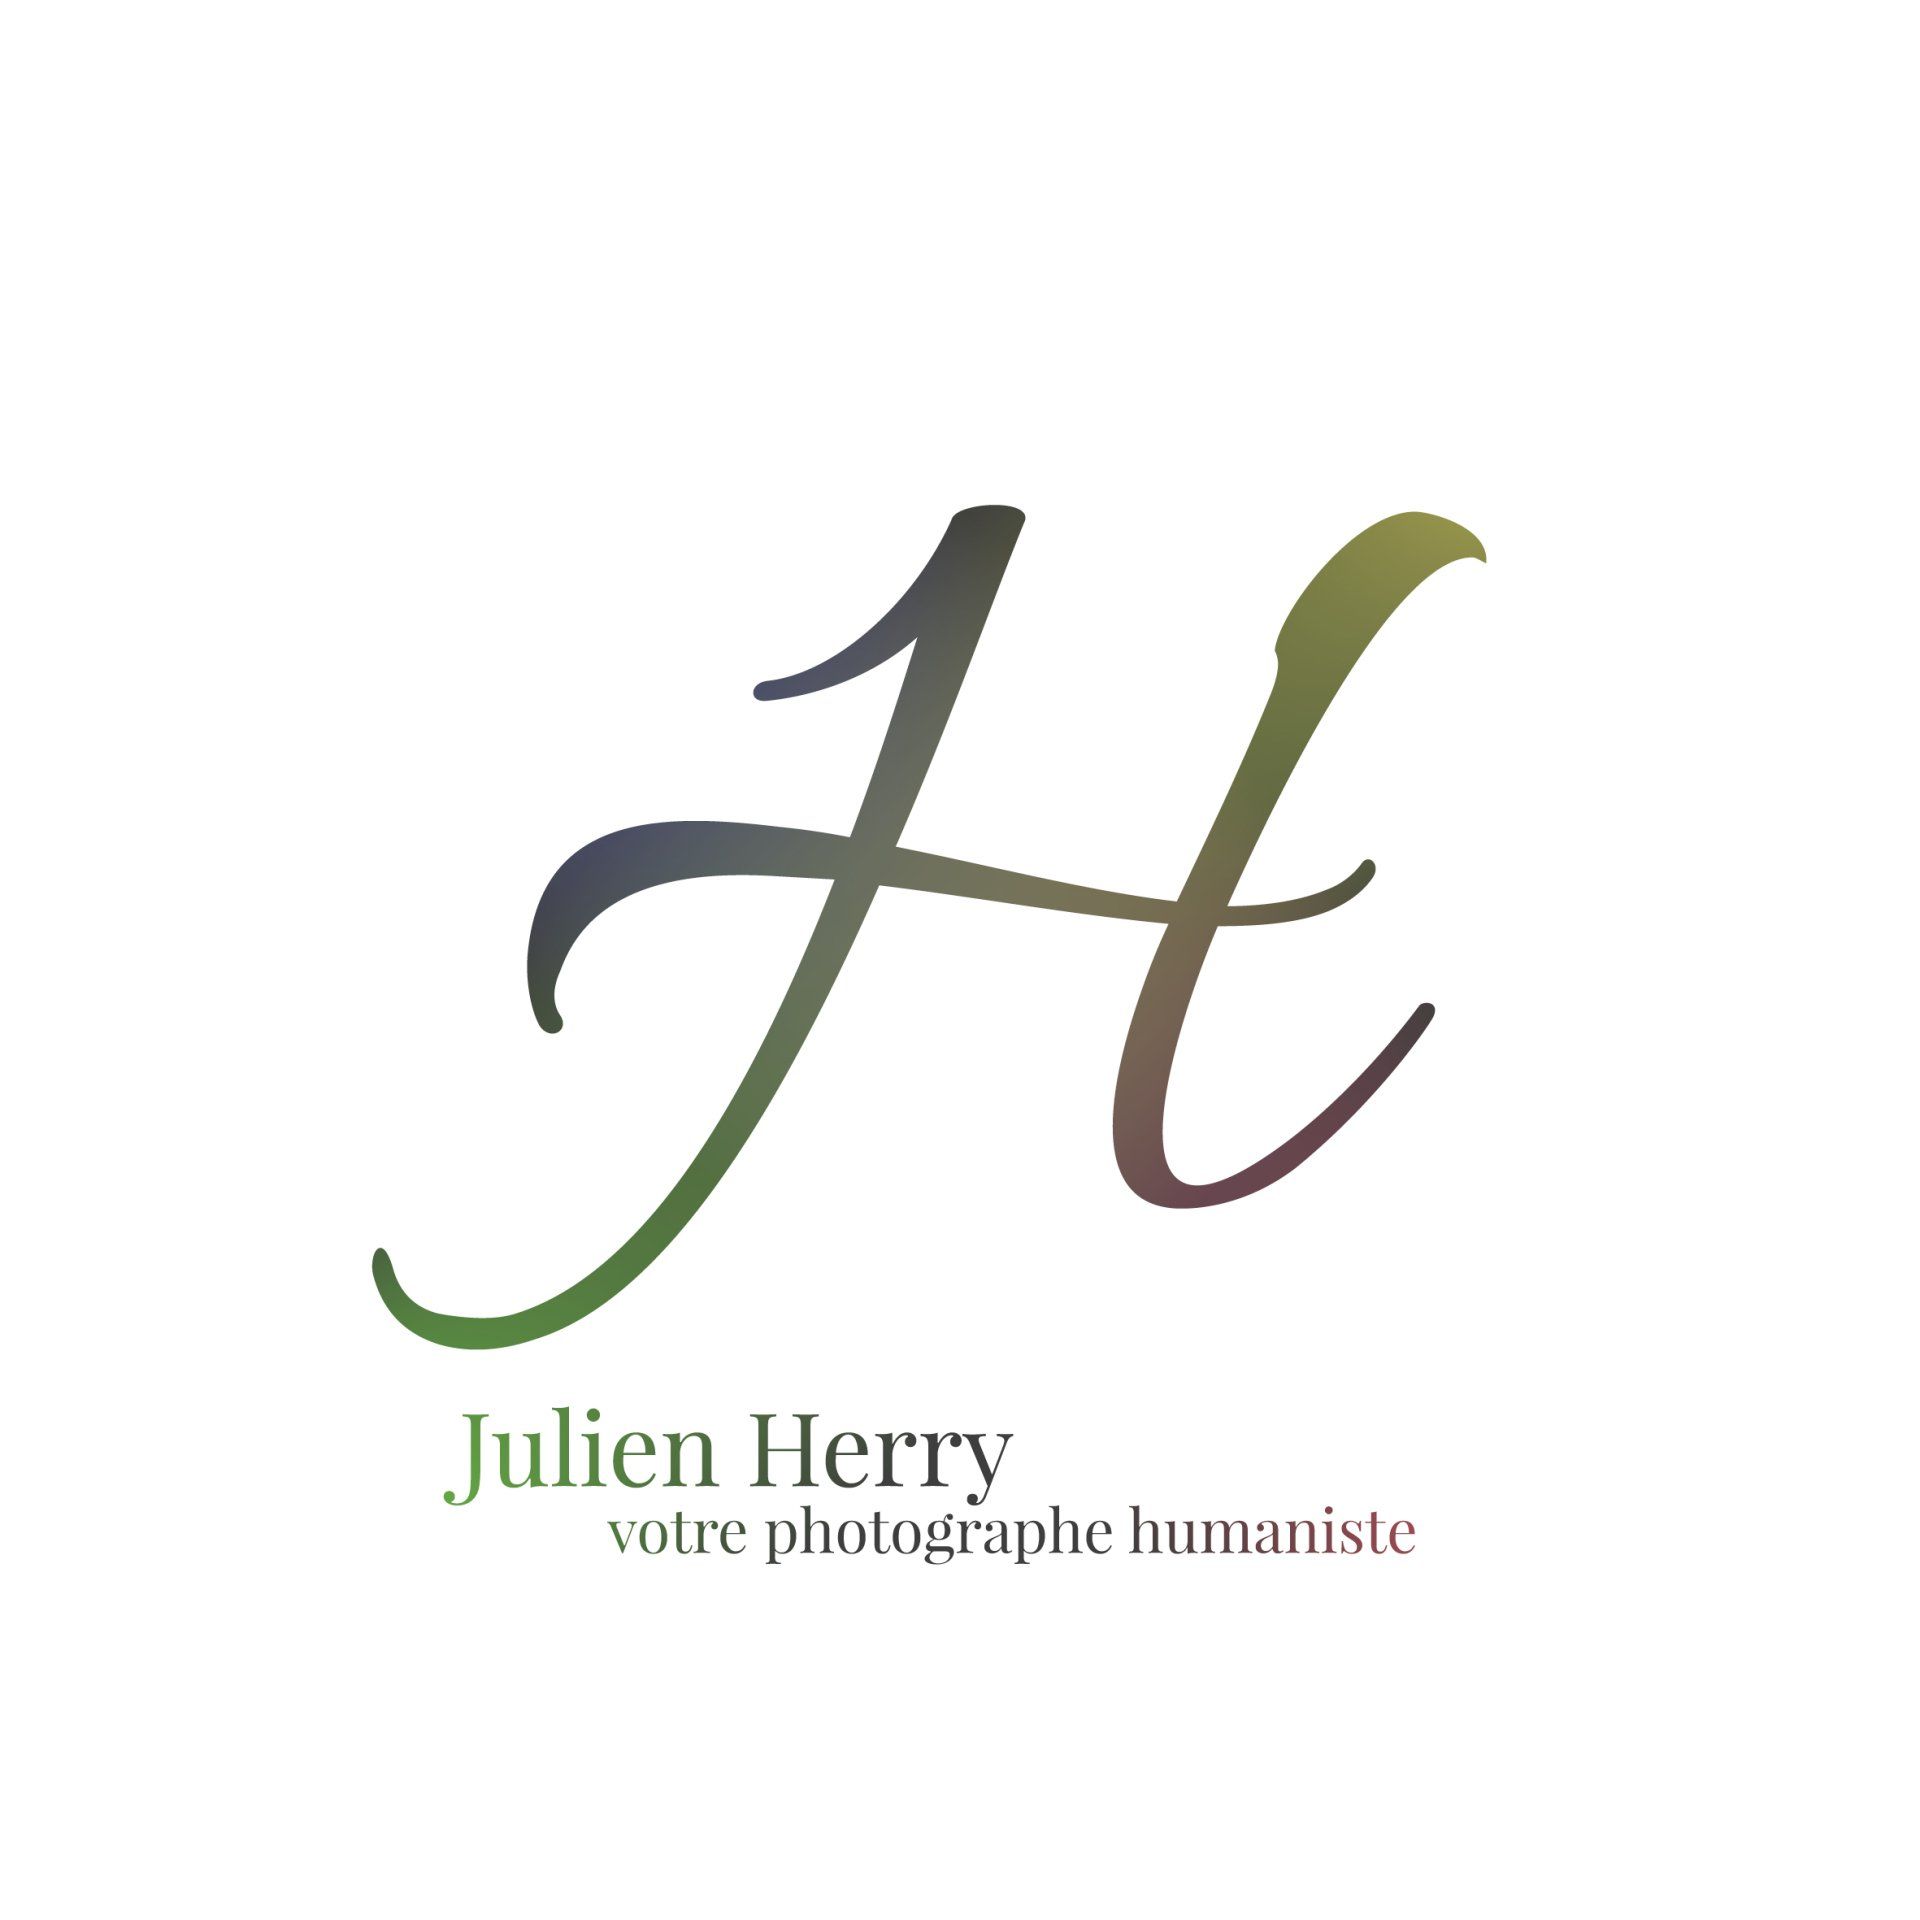 Julien Herry votre photographe humaniste